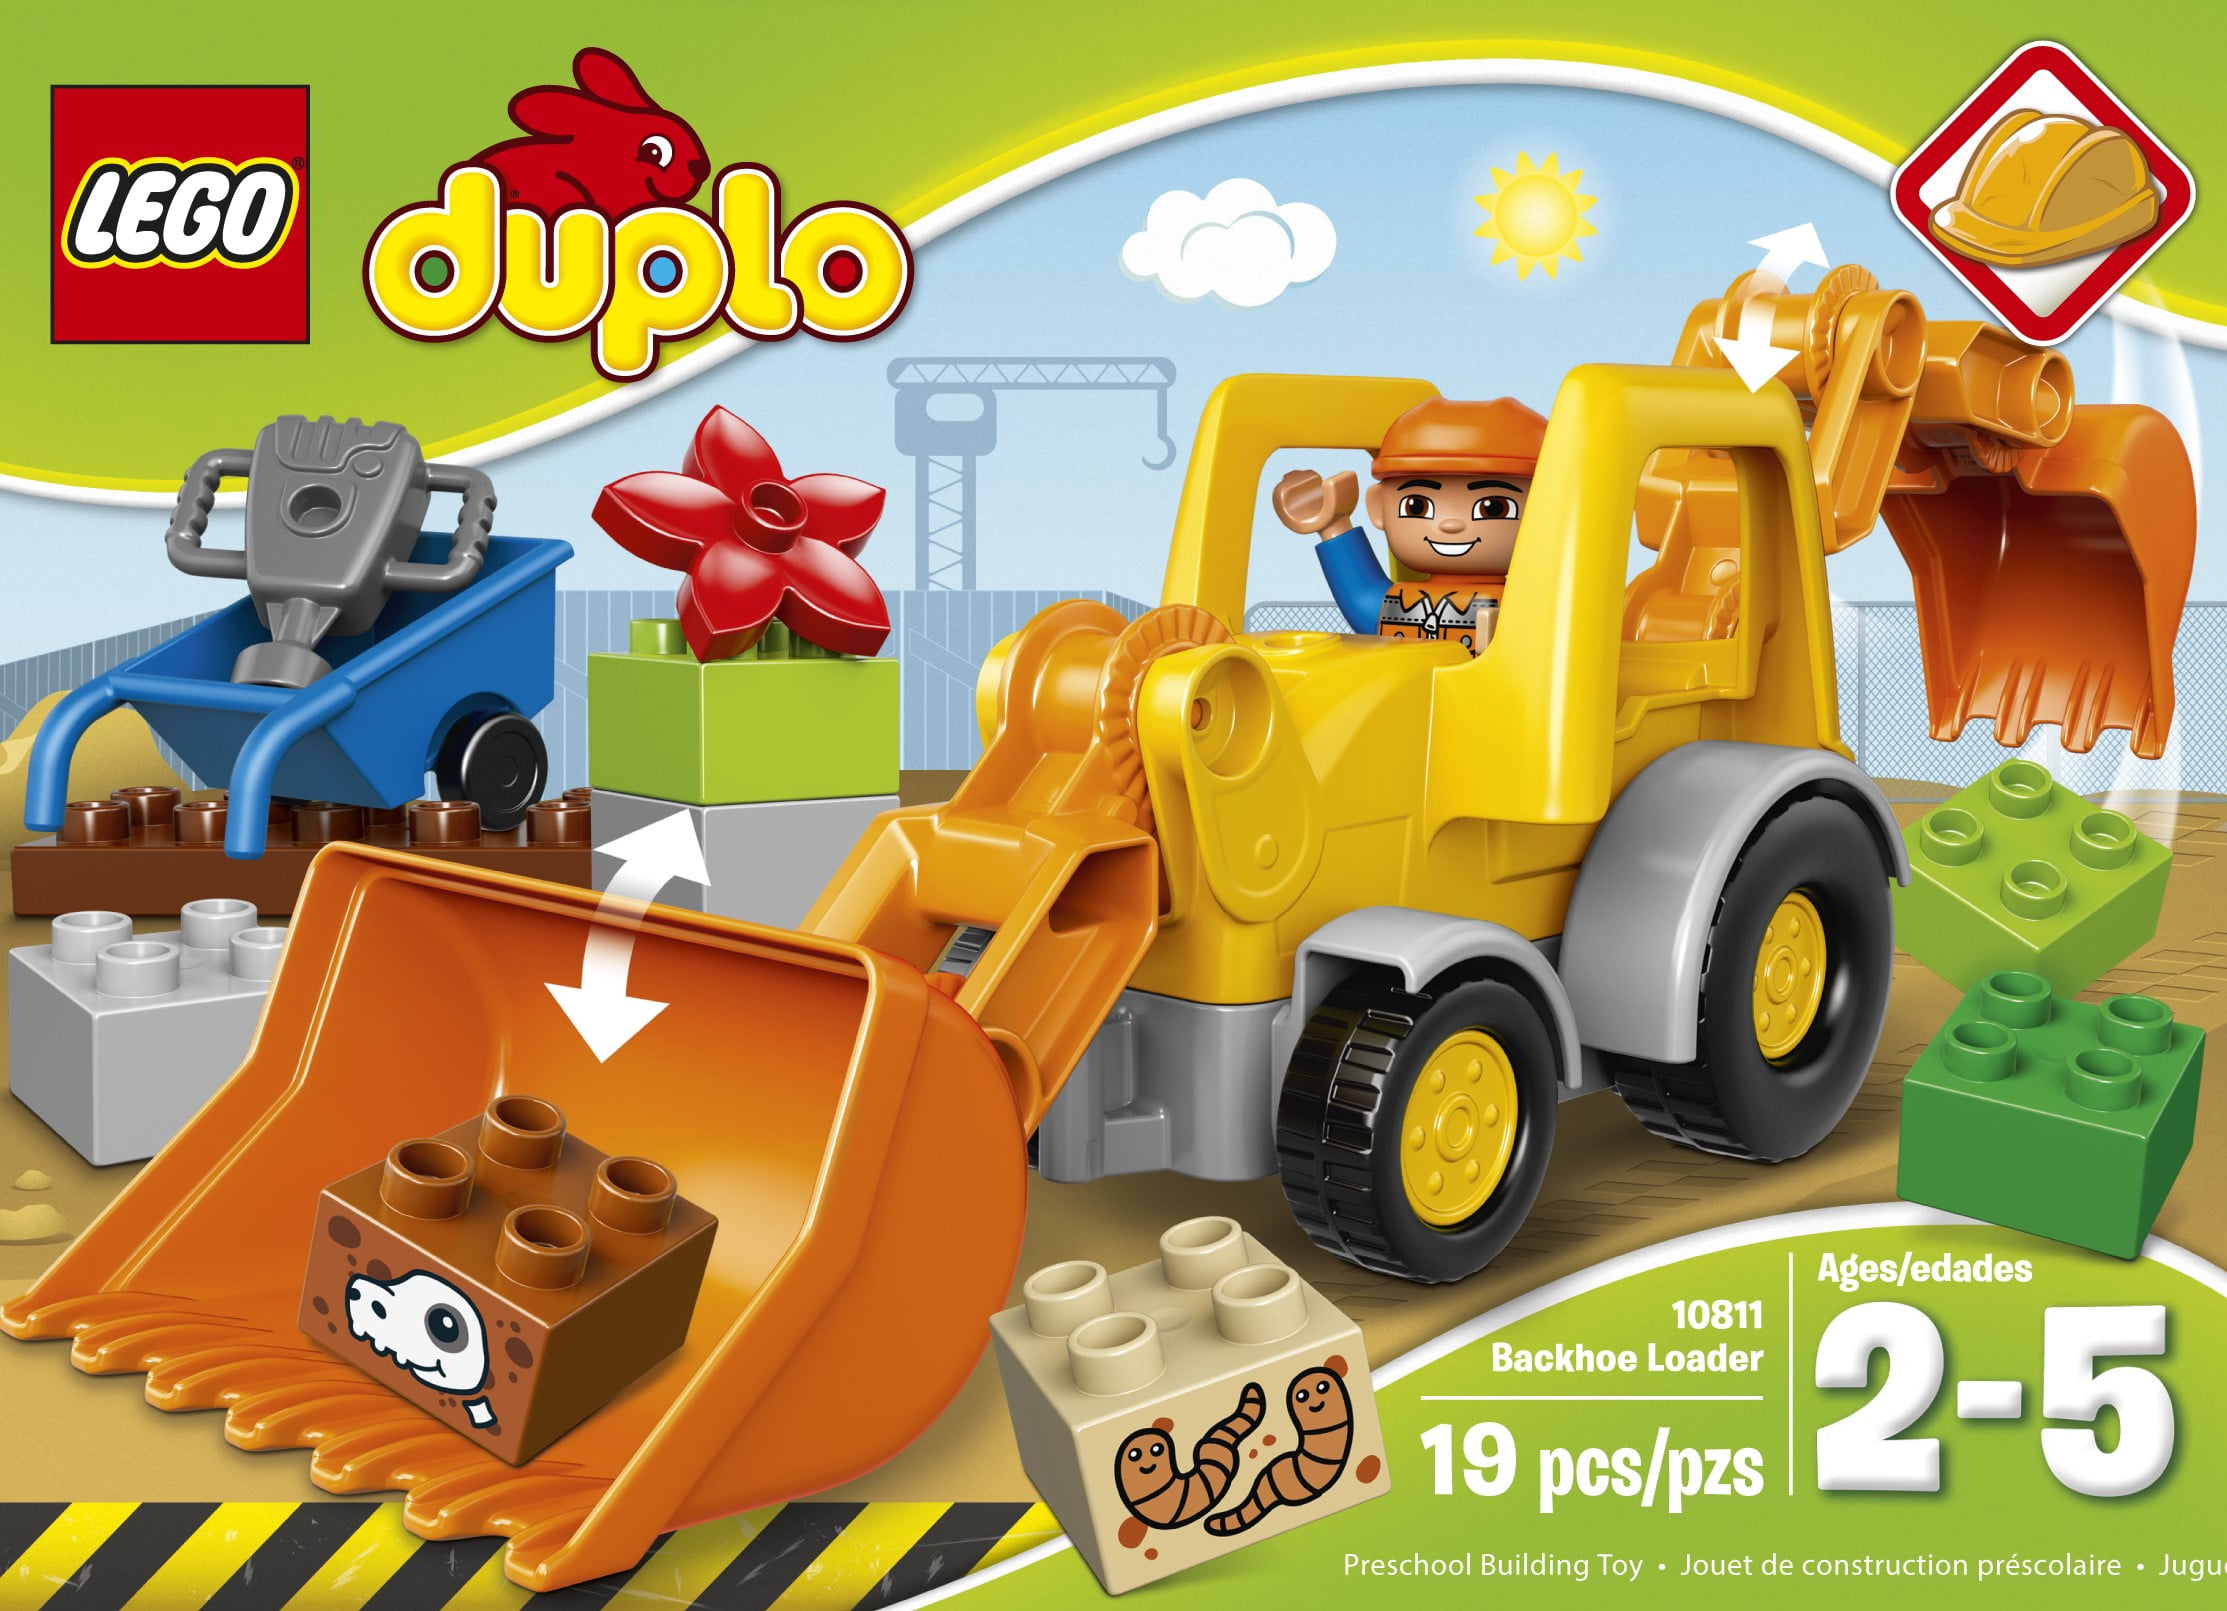 Lego Duplo Item Tractor Frame backhoe/loader yellow 